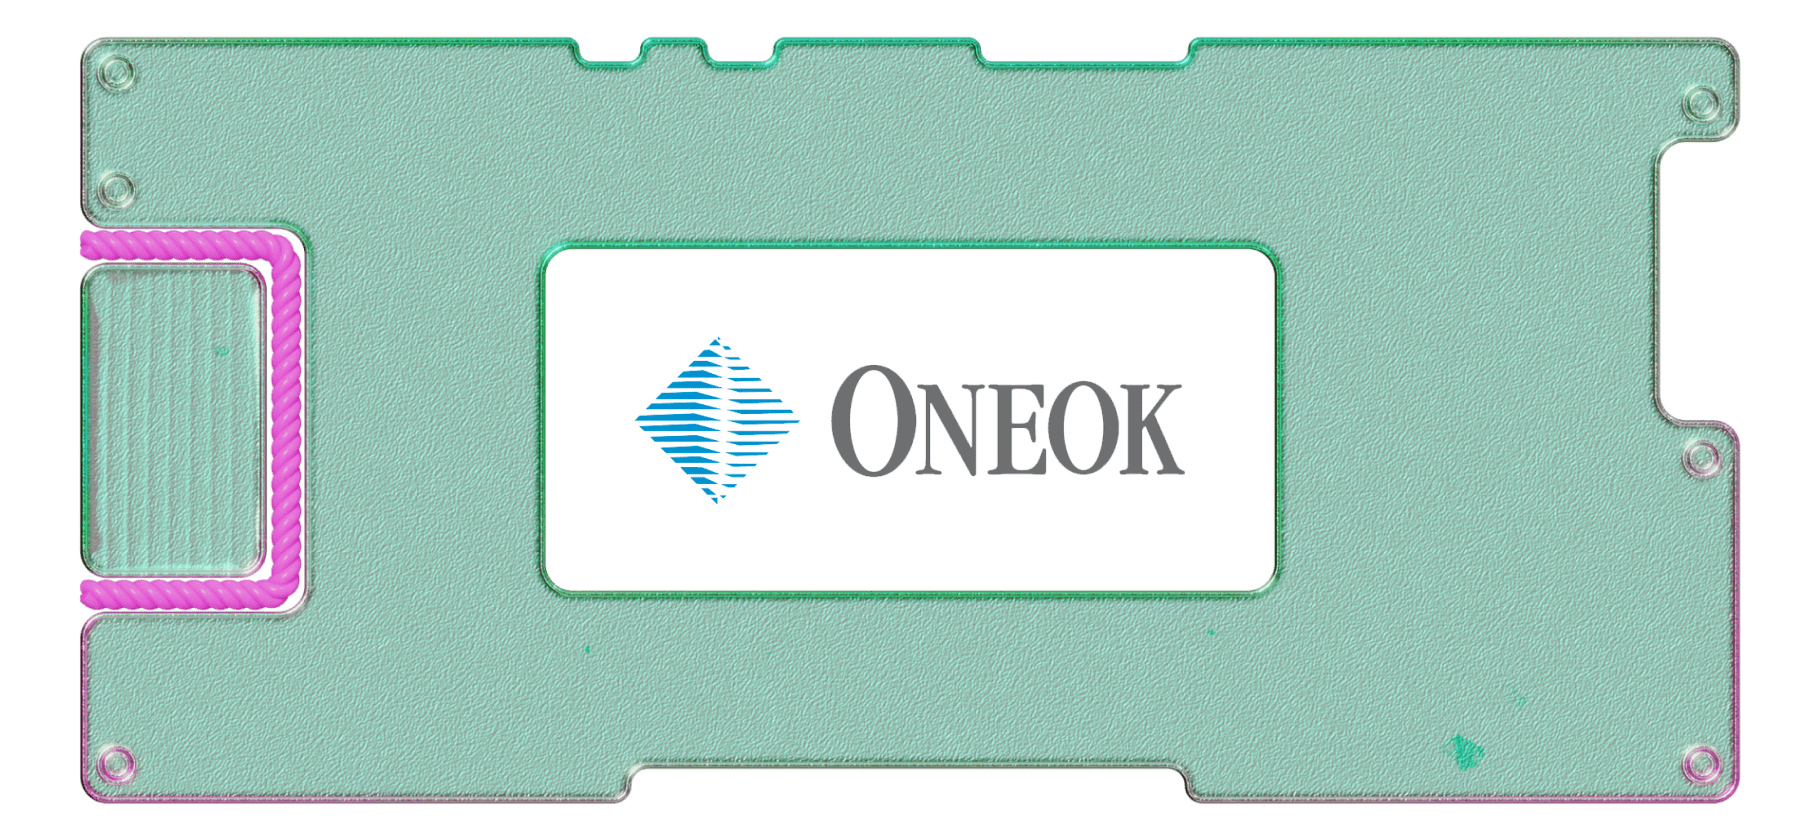 Больше СПГ богу СПГ: инвестируем в Oneok